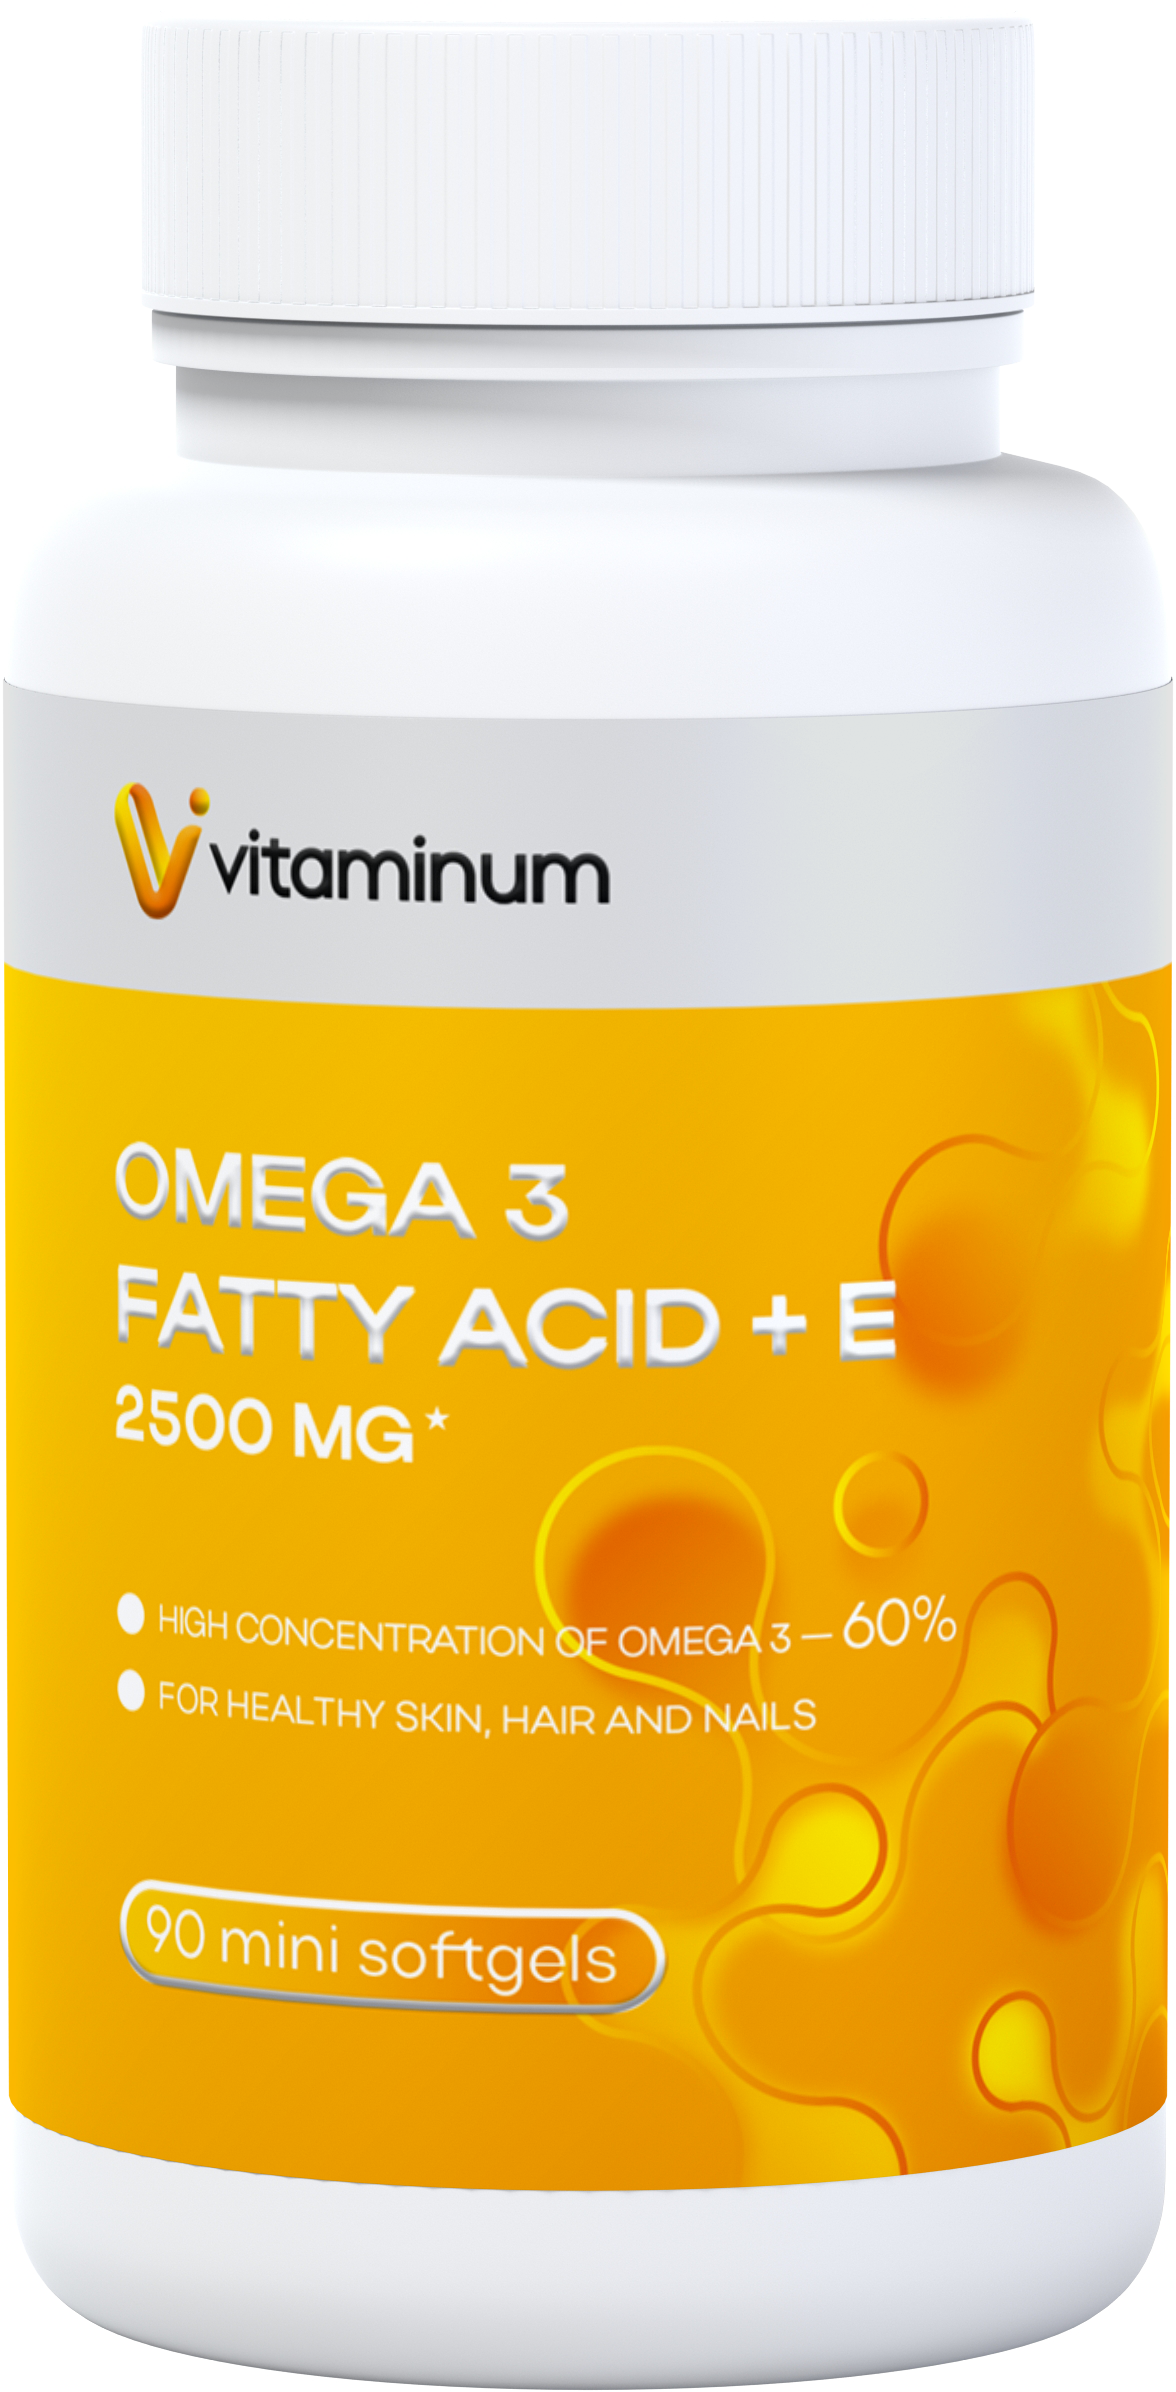  Vitaminum ОМЕГА 3 60% + витамин Е (2500 MG*) 90 капсул 700 мг   в Геленджике